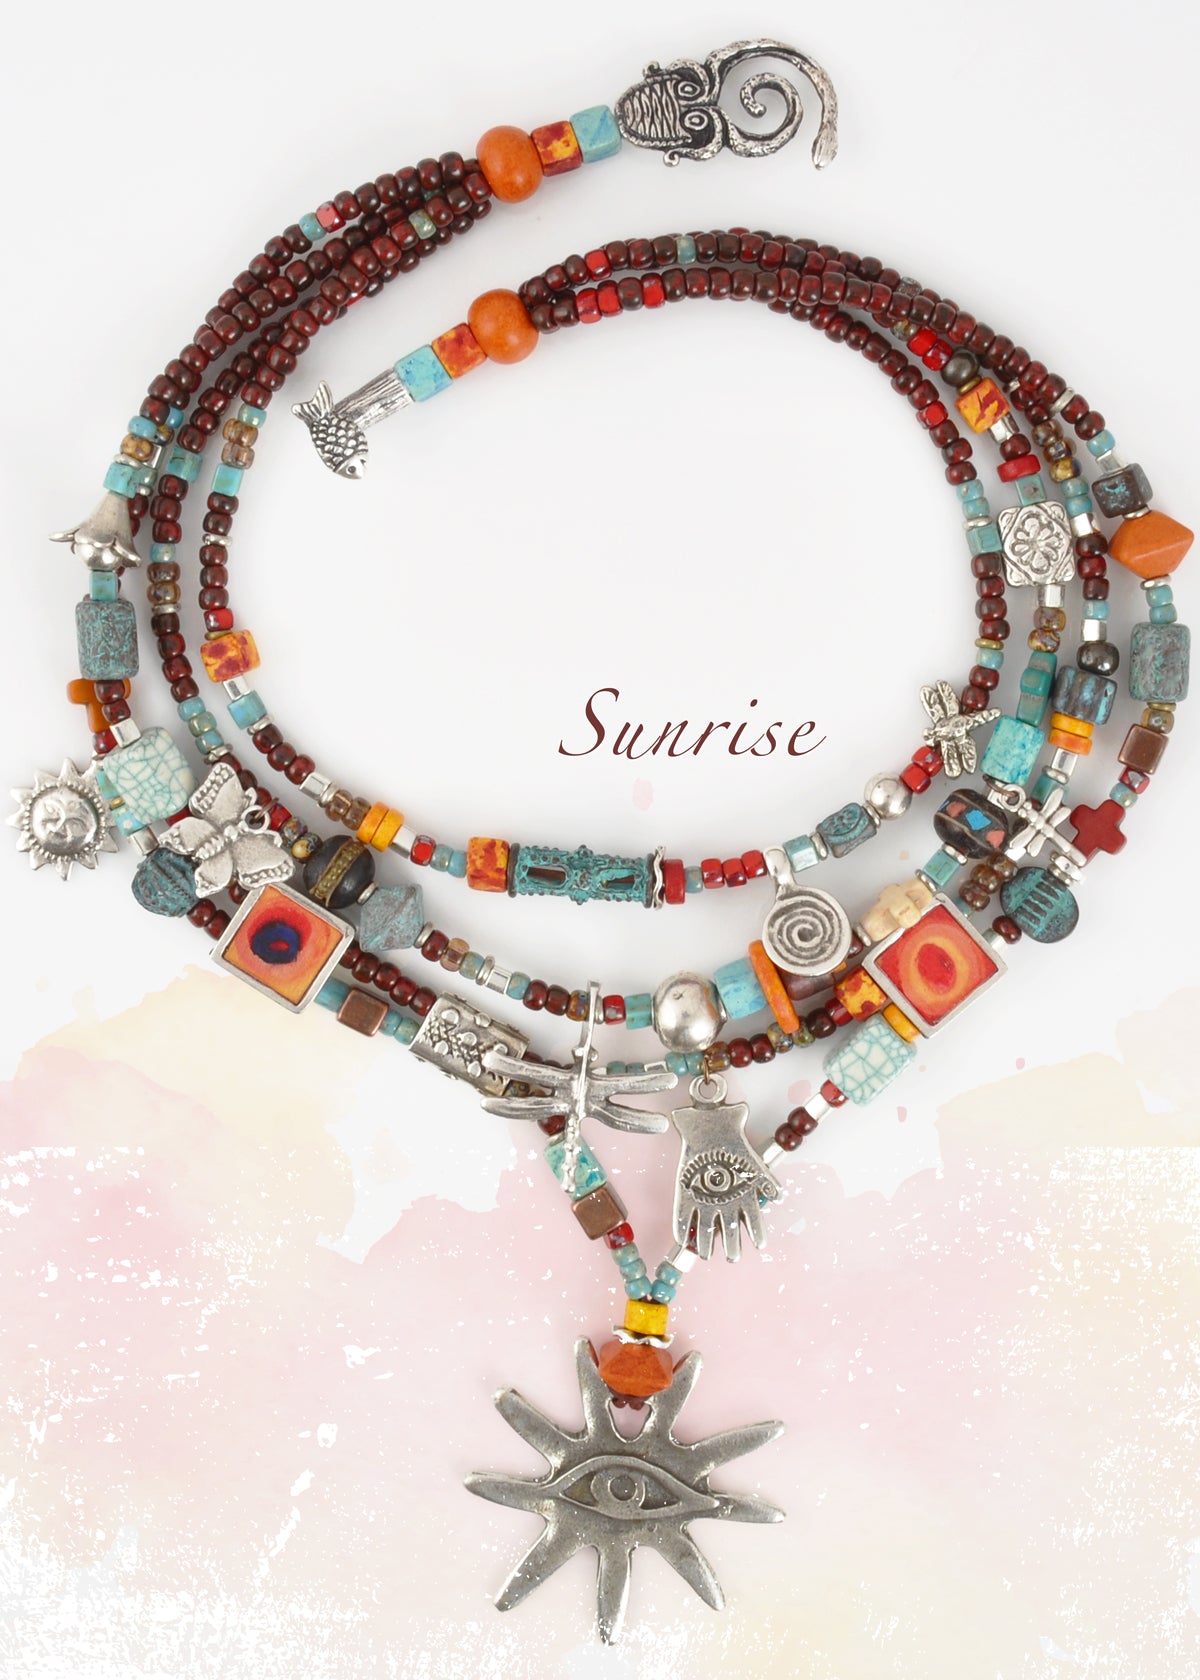 Sunrise Necklace Blog Tamara Scott Designs